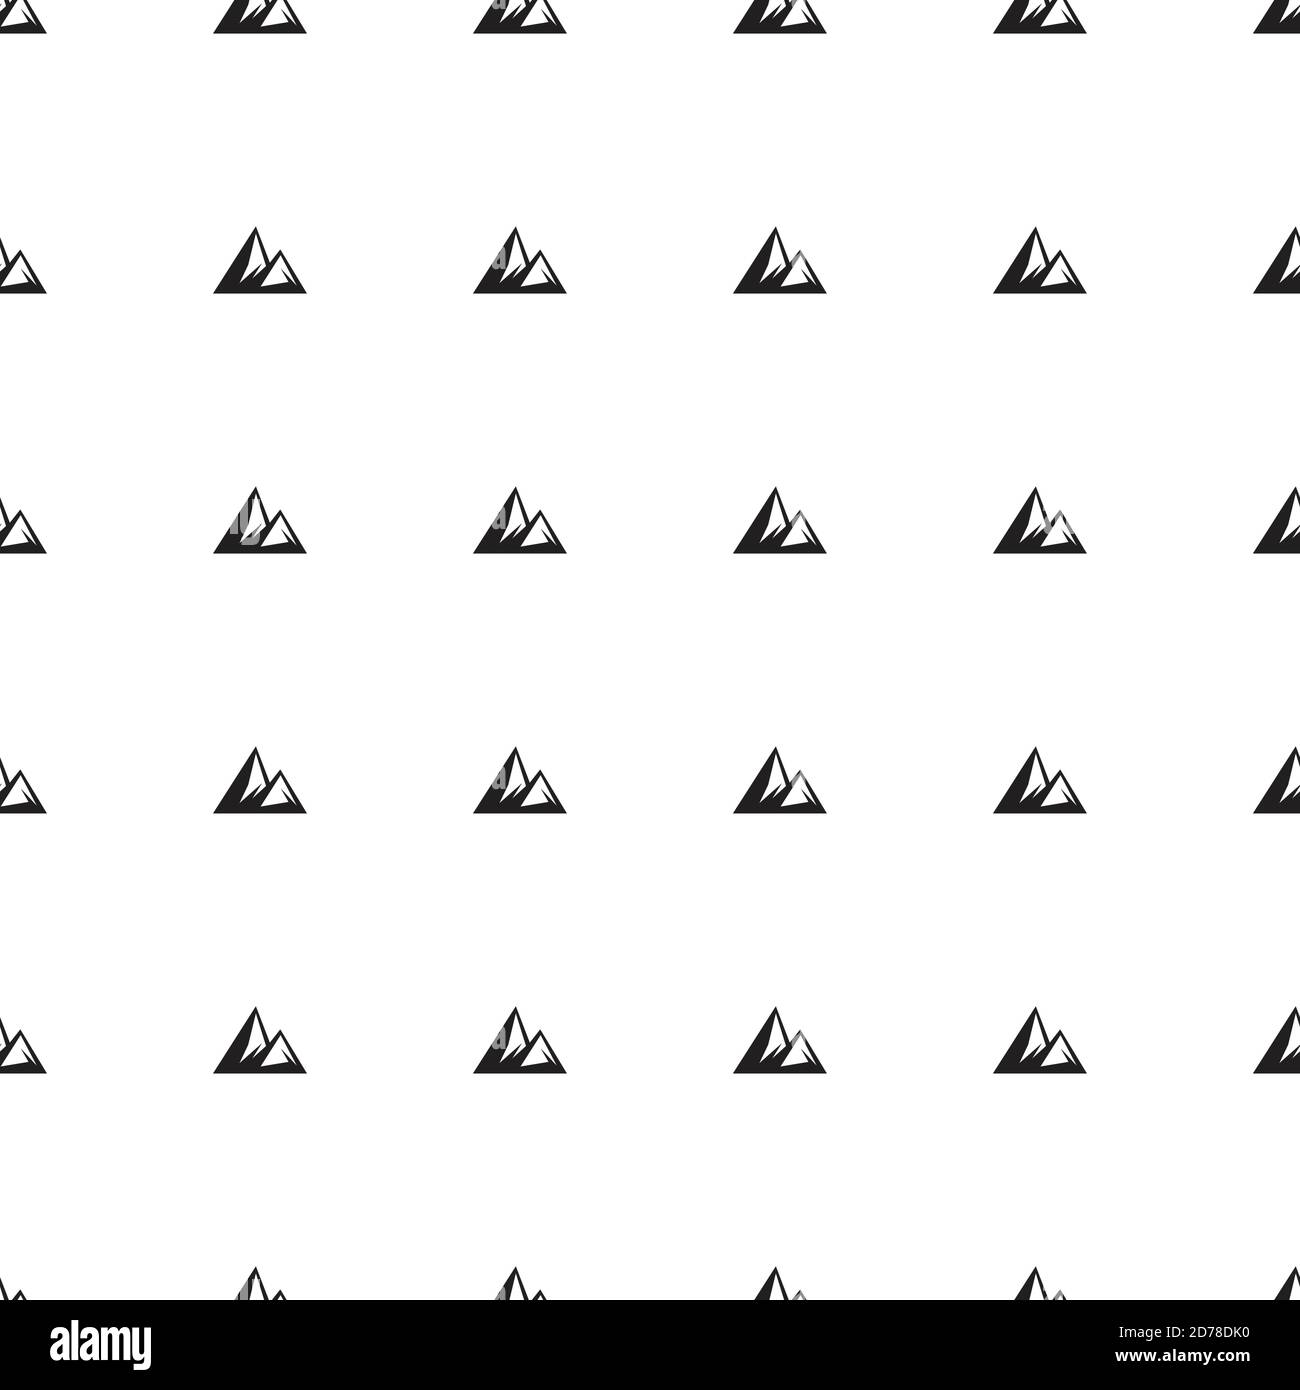 Kreative, abstrakte Berge Symbol Hintergrund. Einfache Illustration von Bergen Vektor-Symbol für Web. Vektorgrafik EPS.8 EPS.10 Stock Vektor